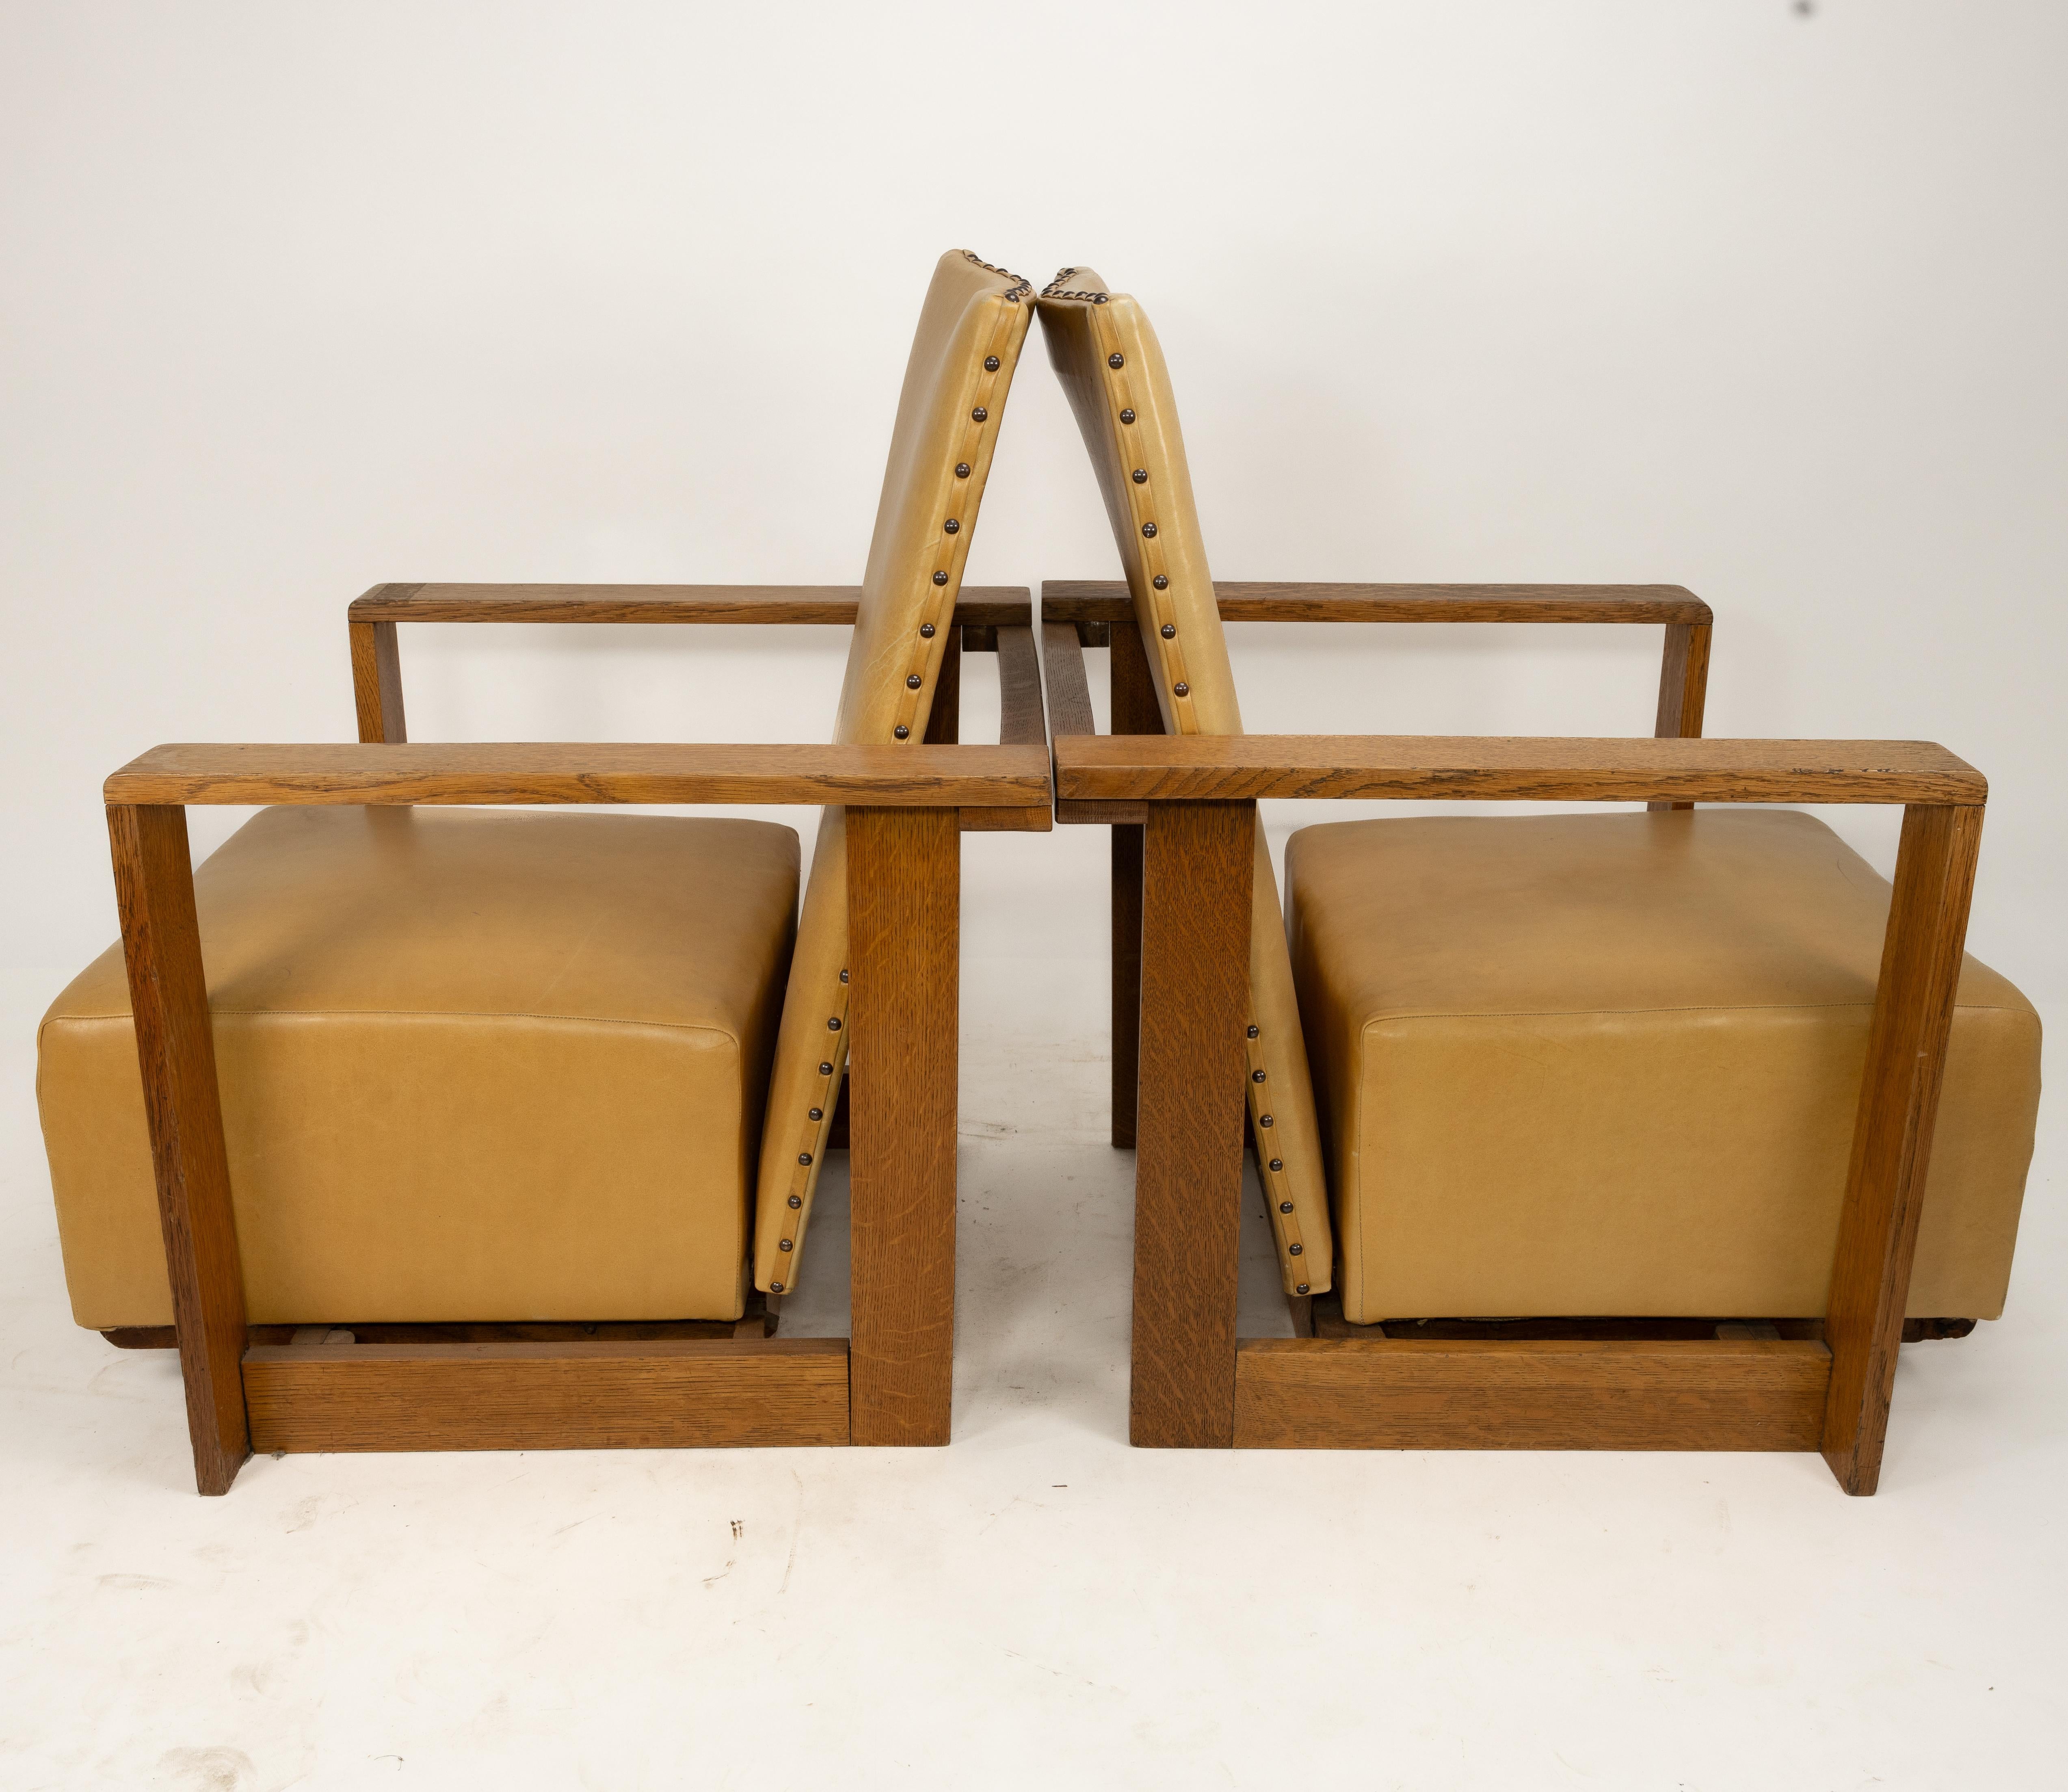 W. H. (Curly) Russell (1906-1971) für Gordon Russell, drei Lehnsessel aus Eichenholz, entworfen 1930, alle fachgerecht mit beigefarbenem Leder neu bezogen. Der Verstellmechanismus funktioniert über zwei Schienen, die es ermöglichen, den Sitz nach